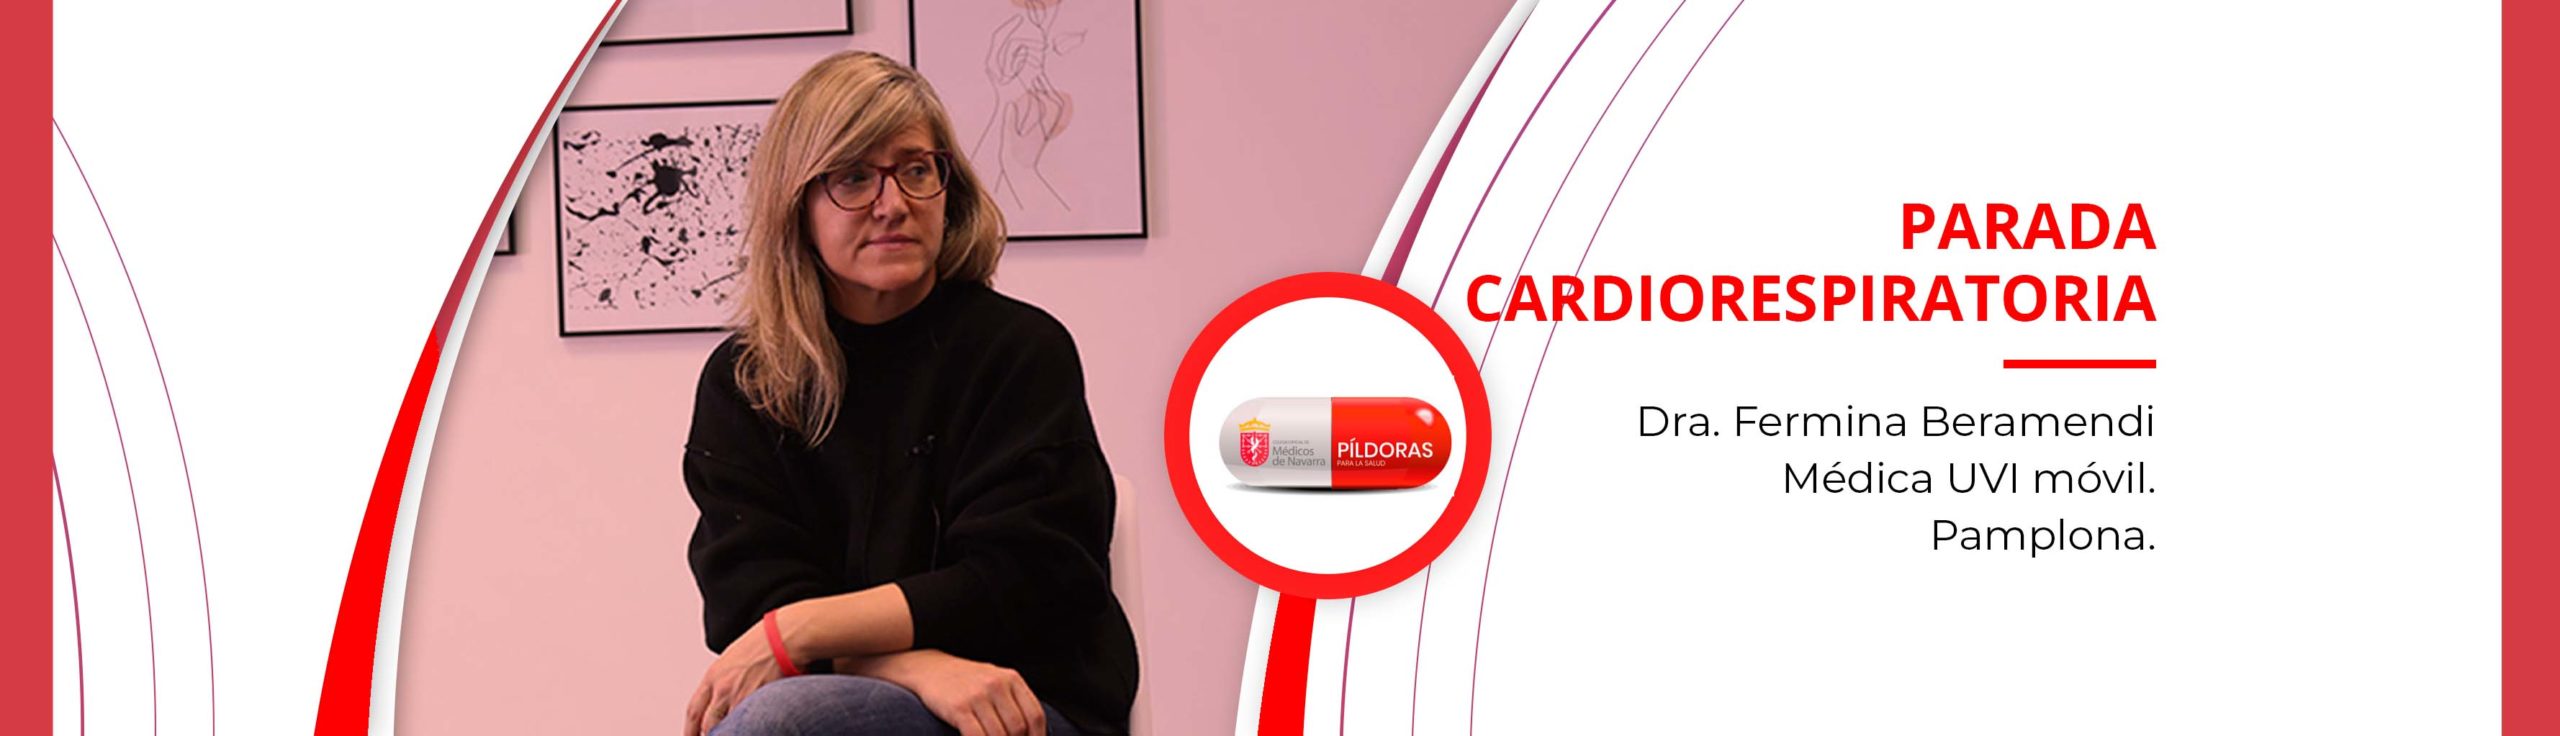 Píldora para la Salud con la Dra. Fermina Beramendi: “Más del 60% de las paradas cardíacas se producen en el domicilio”.